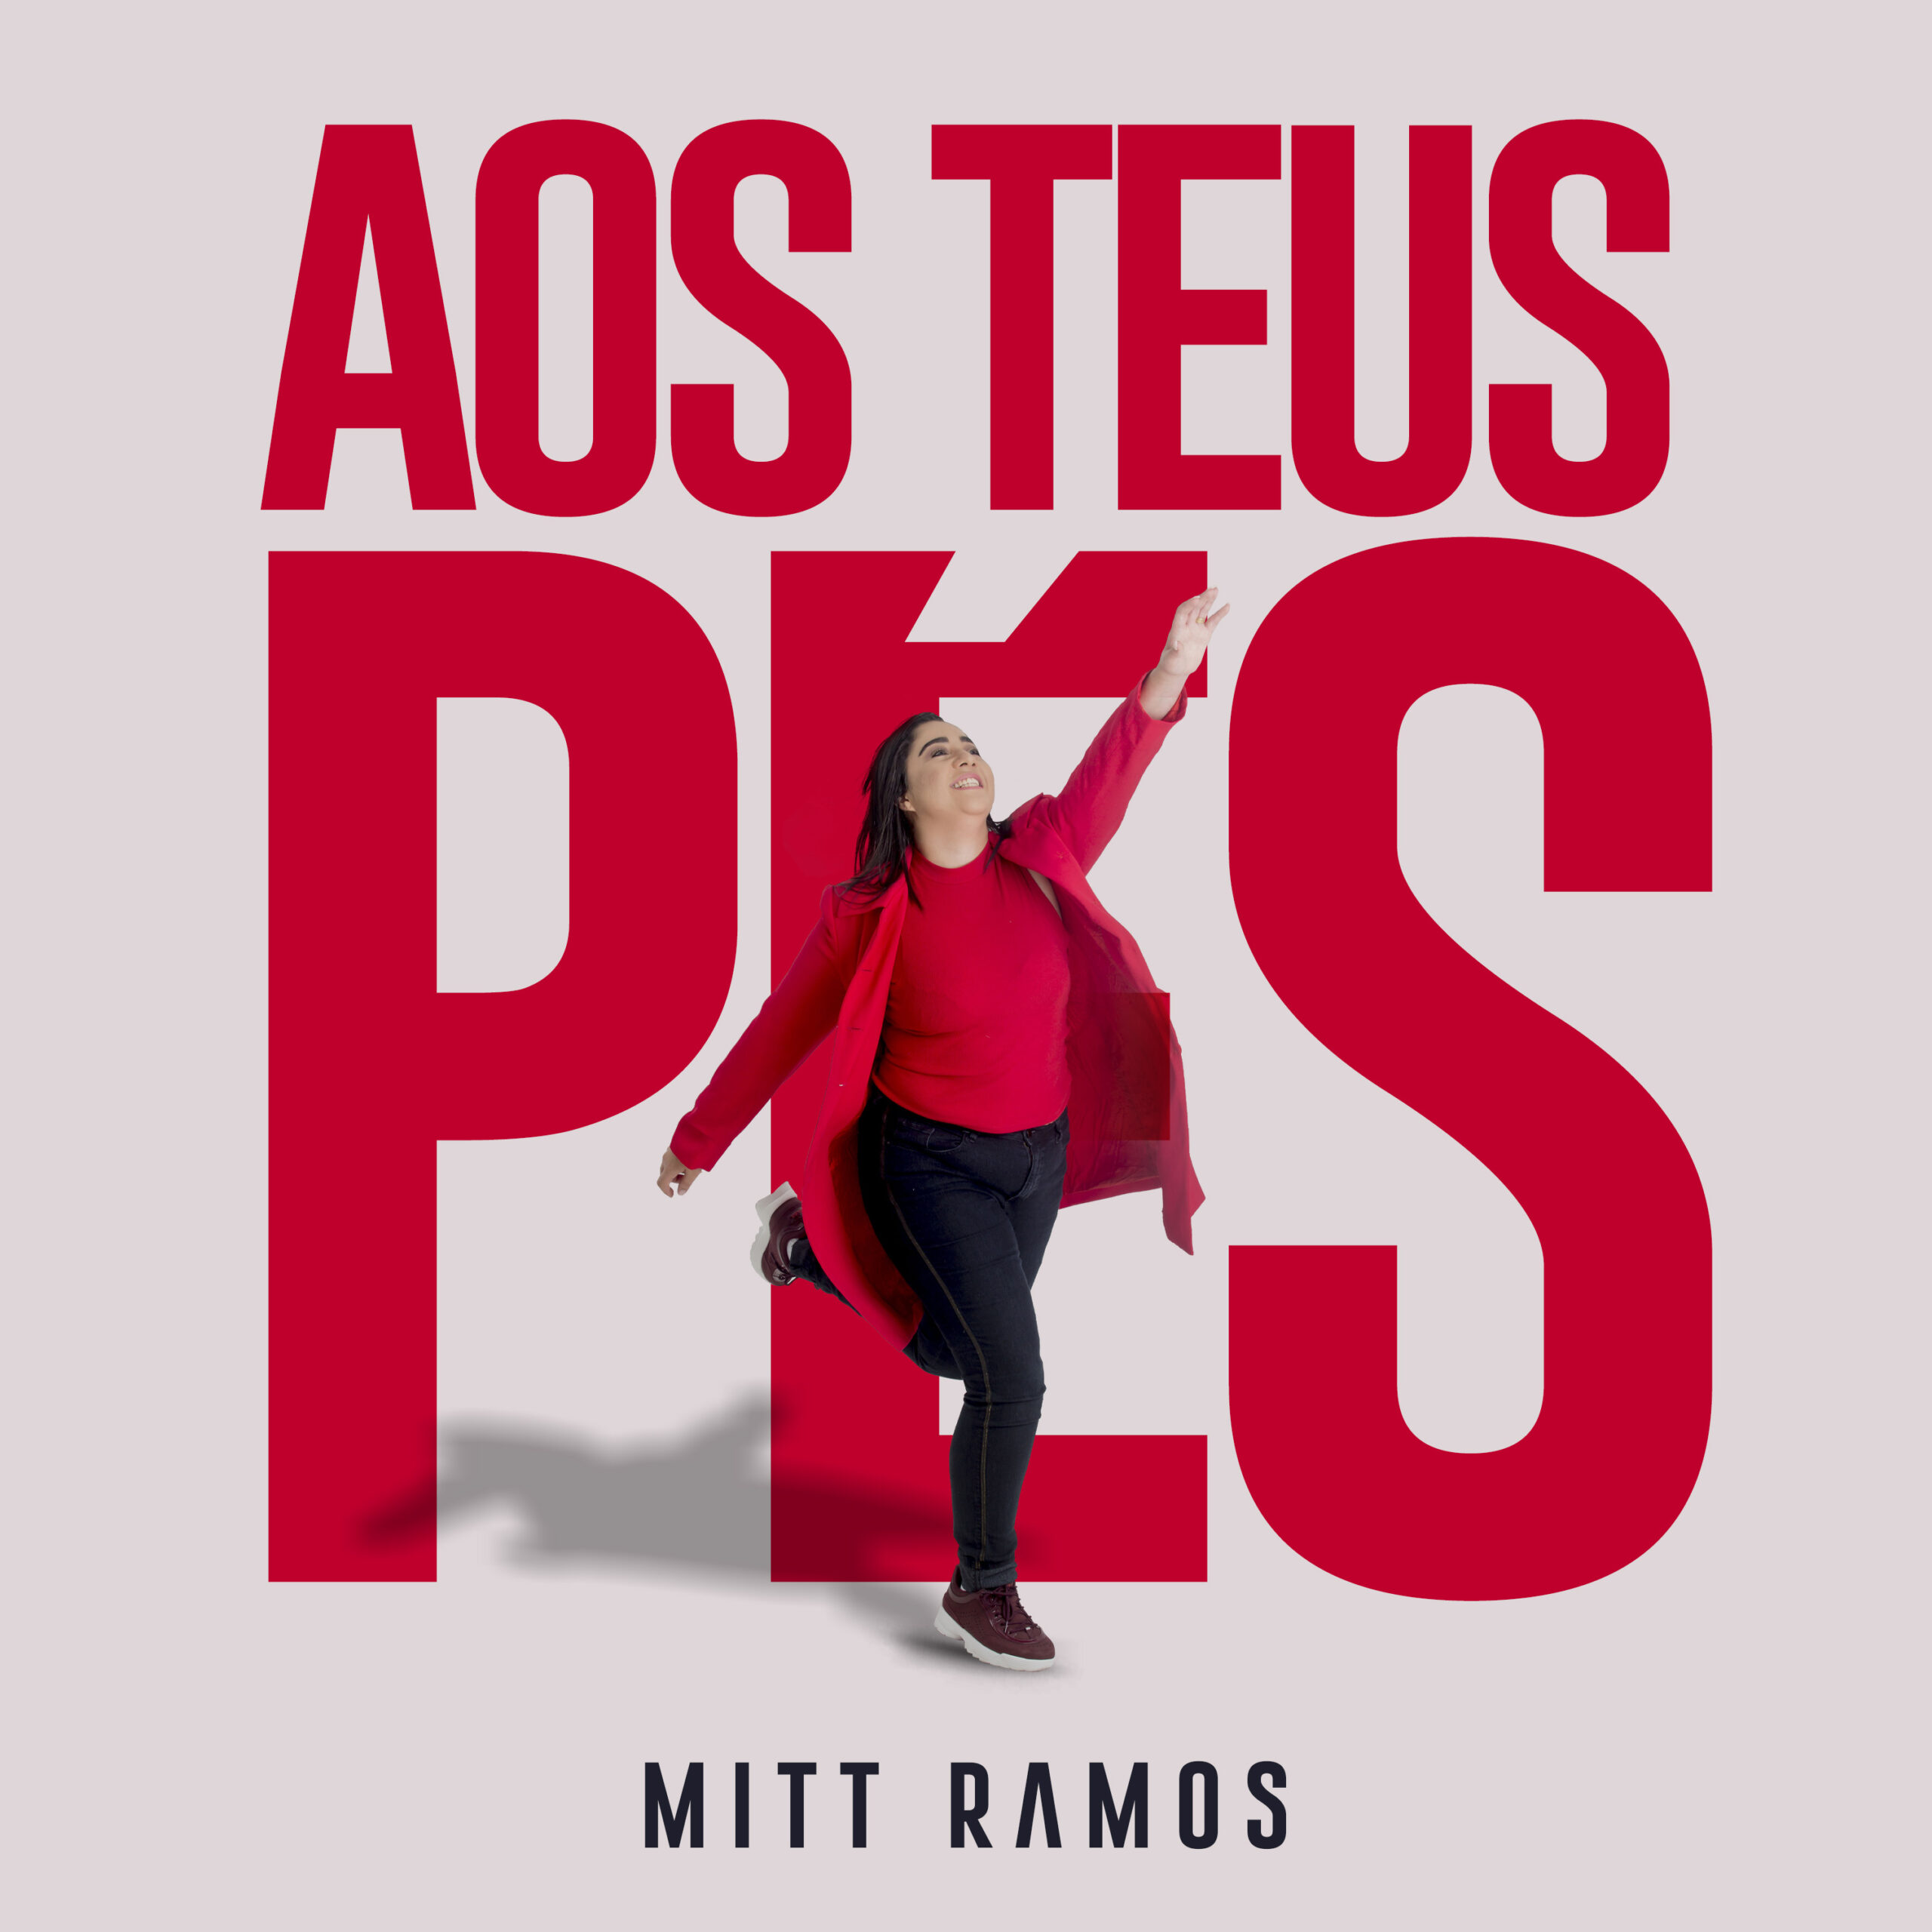 Mitt Ramos lança o single “Aos Teus Pés” com produção de Wesley Ros